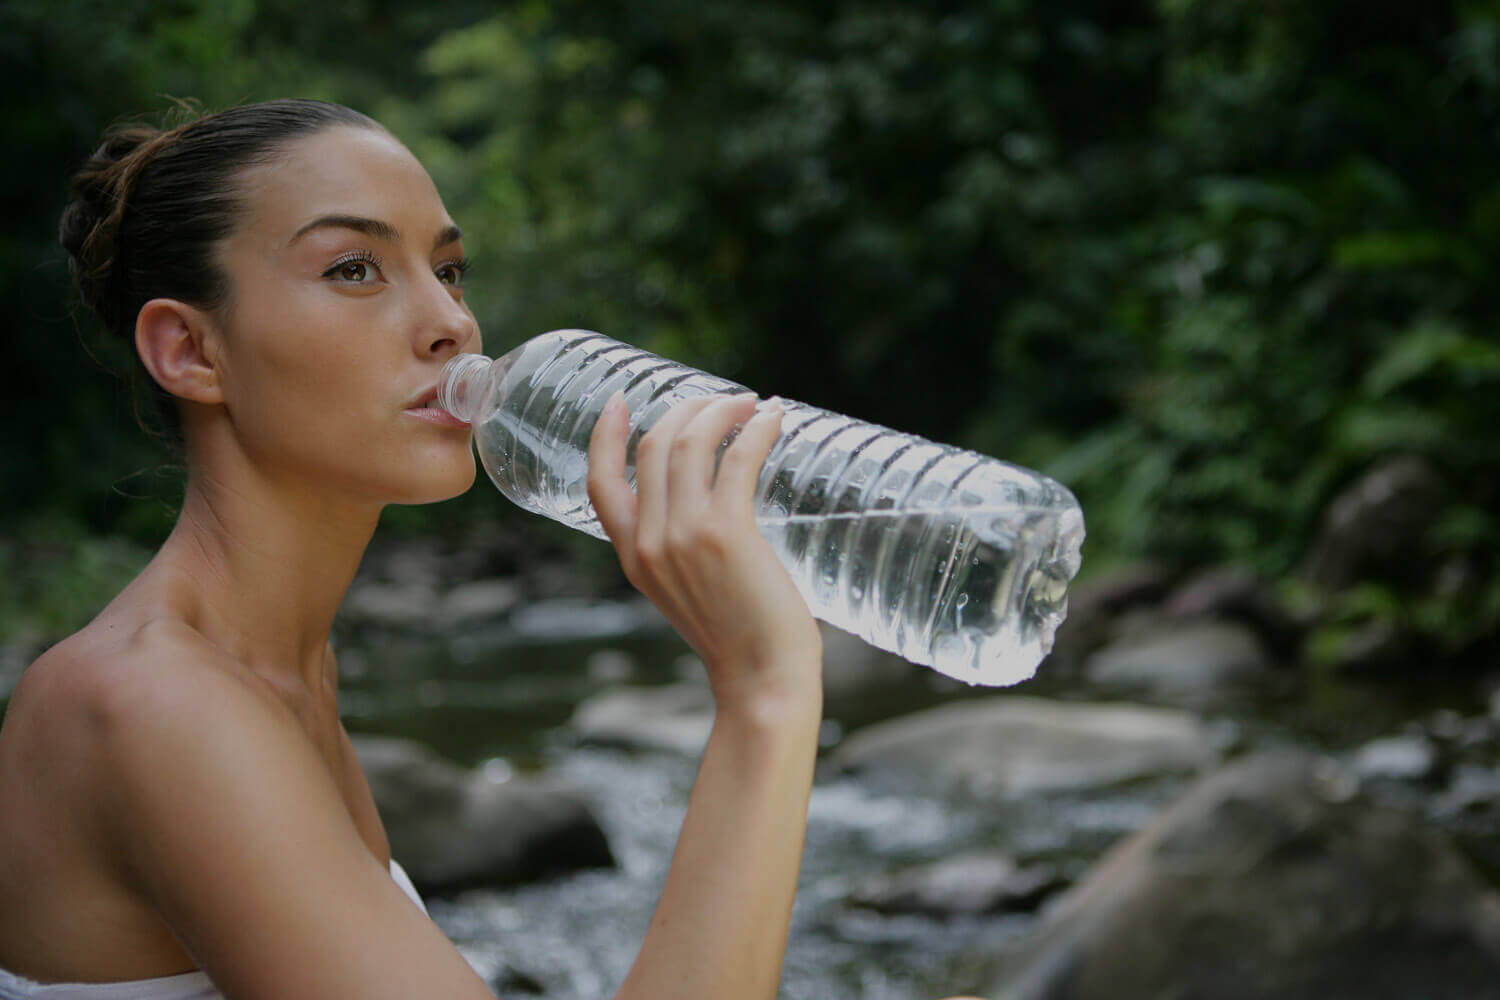 Вода бывает лишней: диетолог оспорил пользу 2 литров жидкости в день